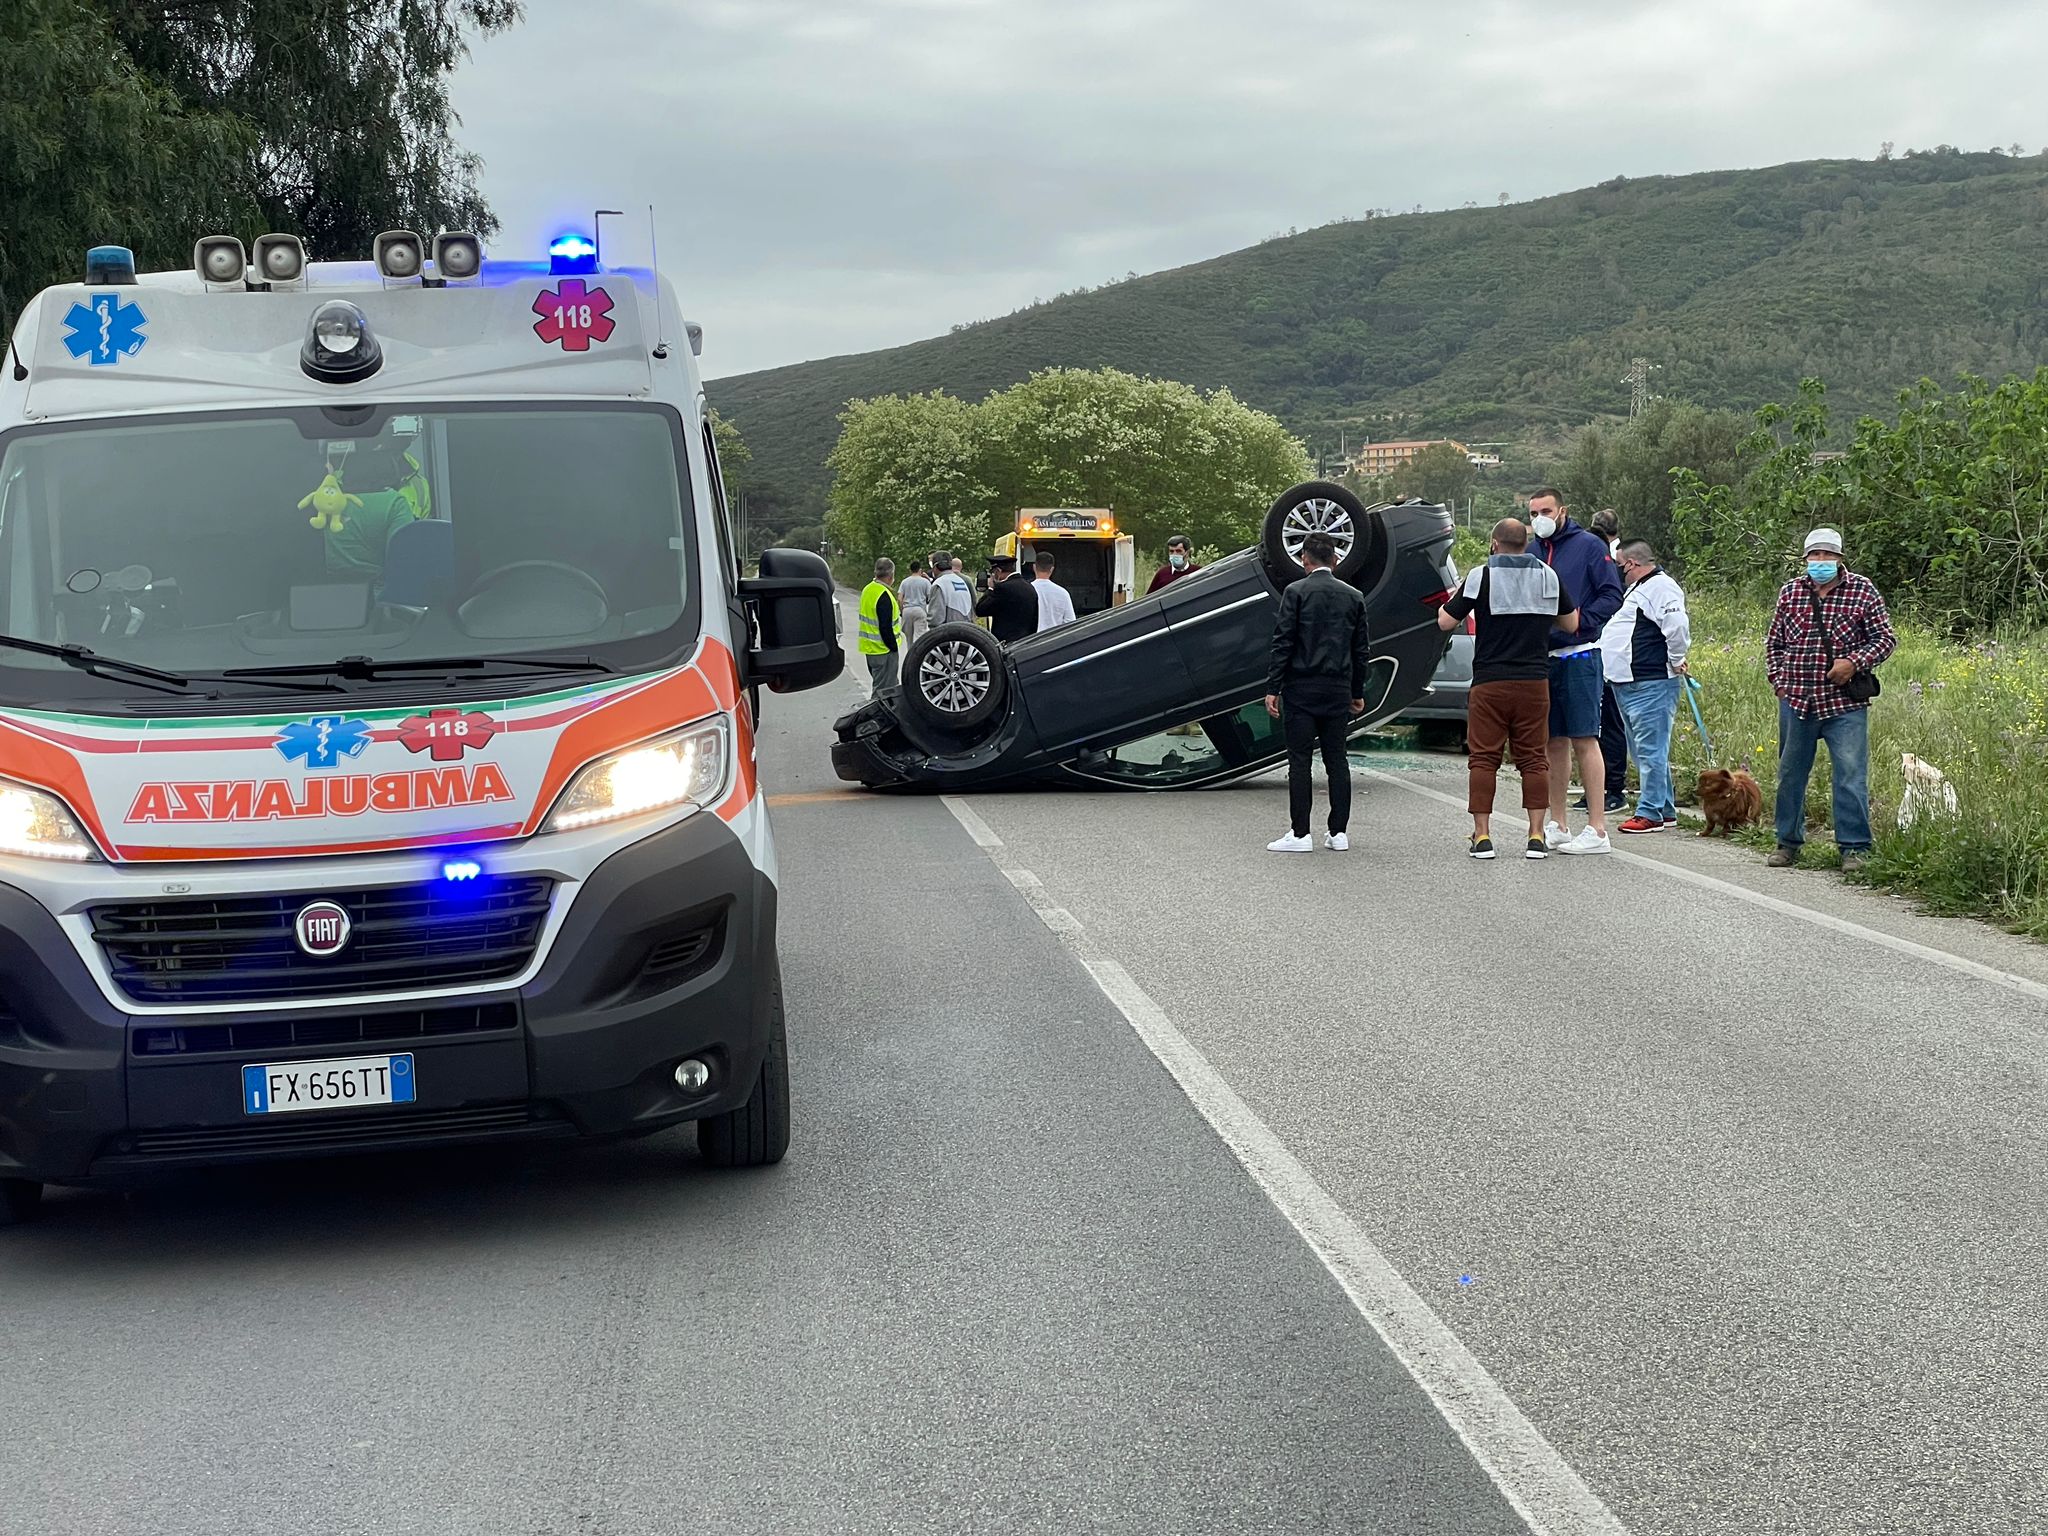 Carambola fra tre auto a San Marco di Castellabate, 3 feriti